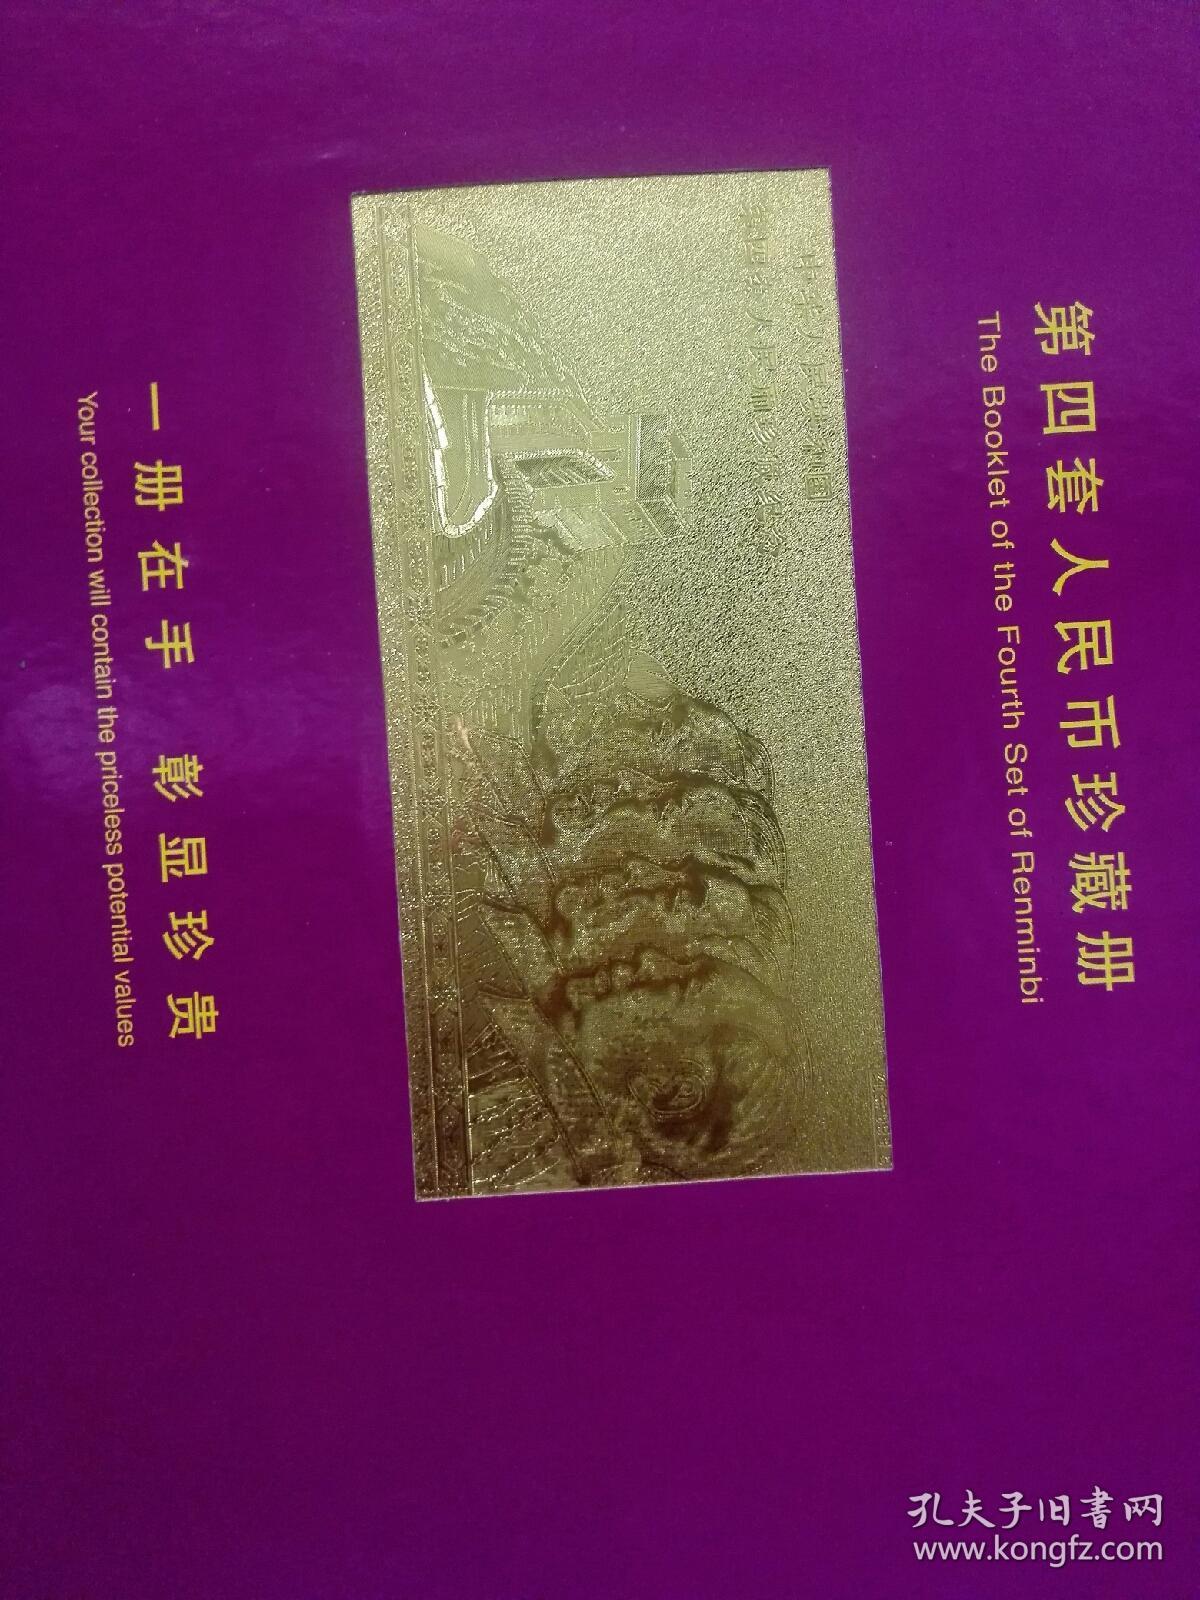 中华人民共和国第四套人民币珍藏册（纸币珍藏册）里面包含一张特制的四大伟人与长城的金箔纪念片 且每张人民币的编号尾号4位号码相同，收藏价值与意义深远  全新真币  实物如图